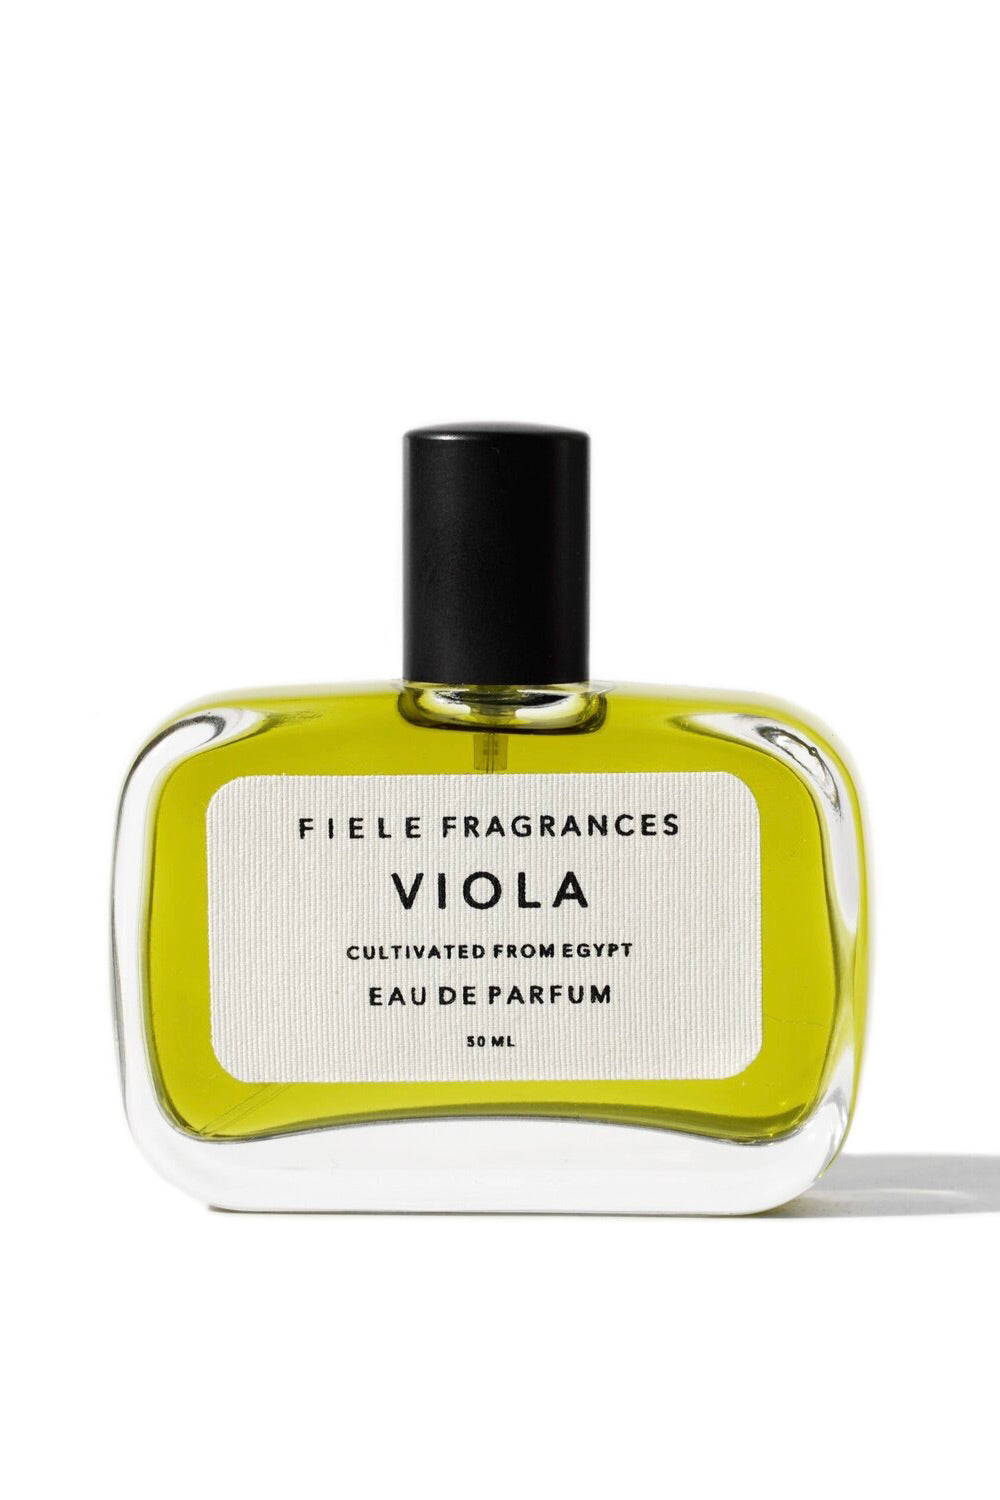 Fiele Eau De Parfum / Viola